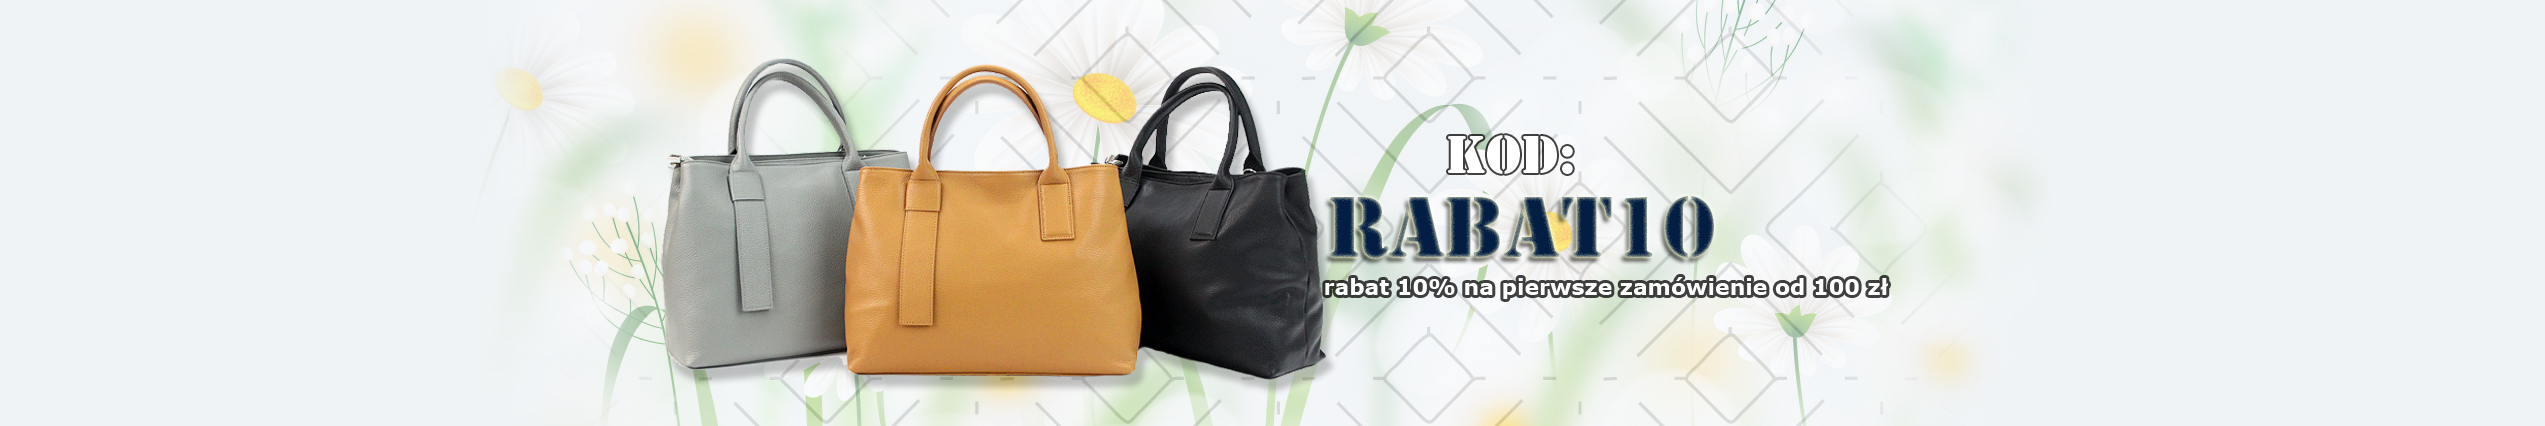 Rabat 10% na zamówienie od 100 zł - torebki, portfele, paski, walizki w sklepie internetowym GREGORIO